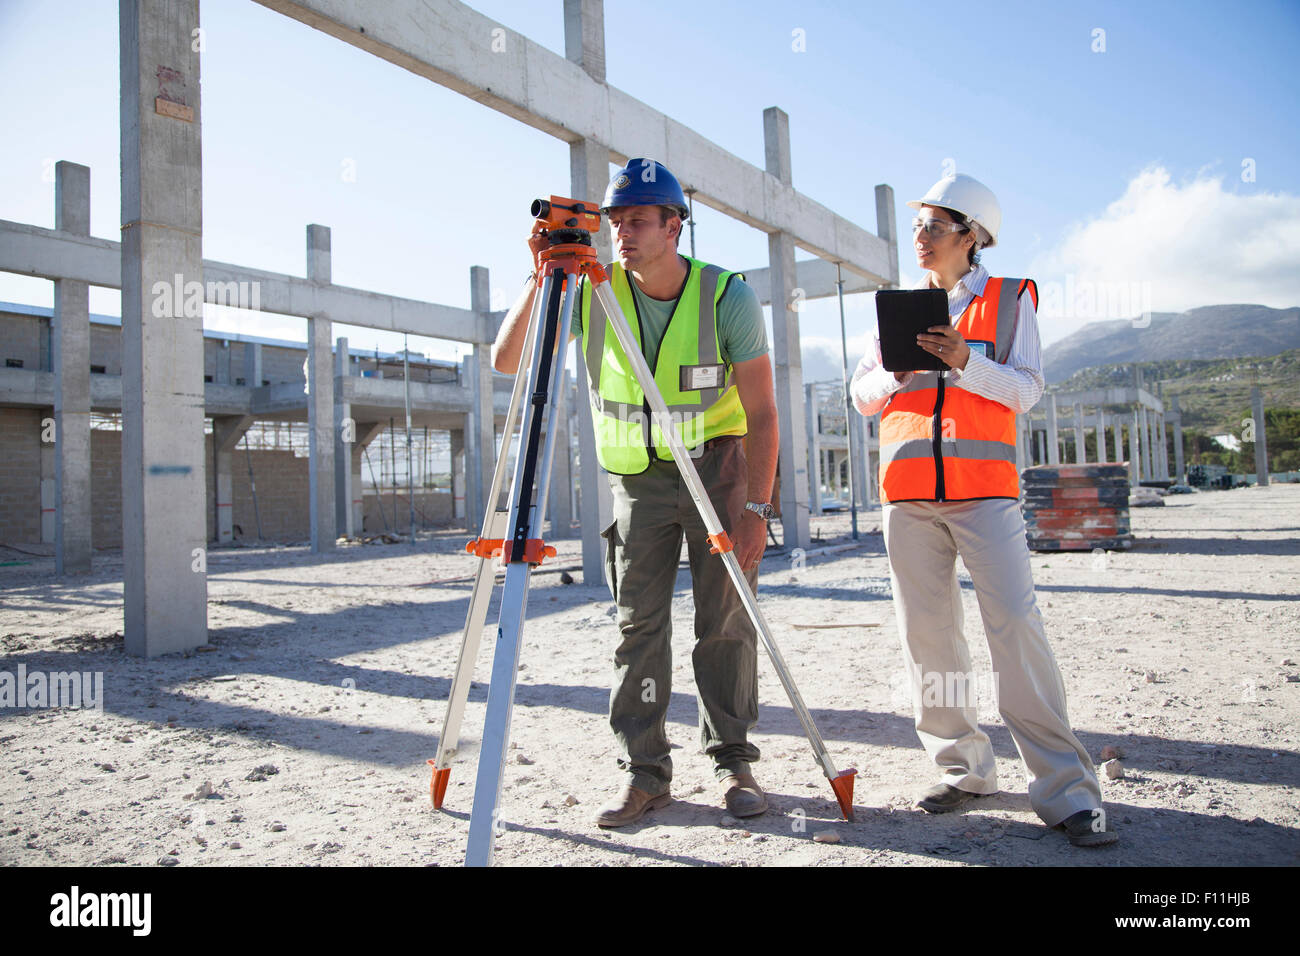 Surveyor et architect working at construction site Banque D'Images